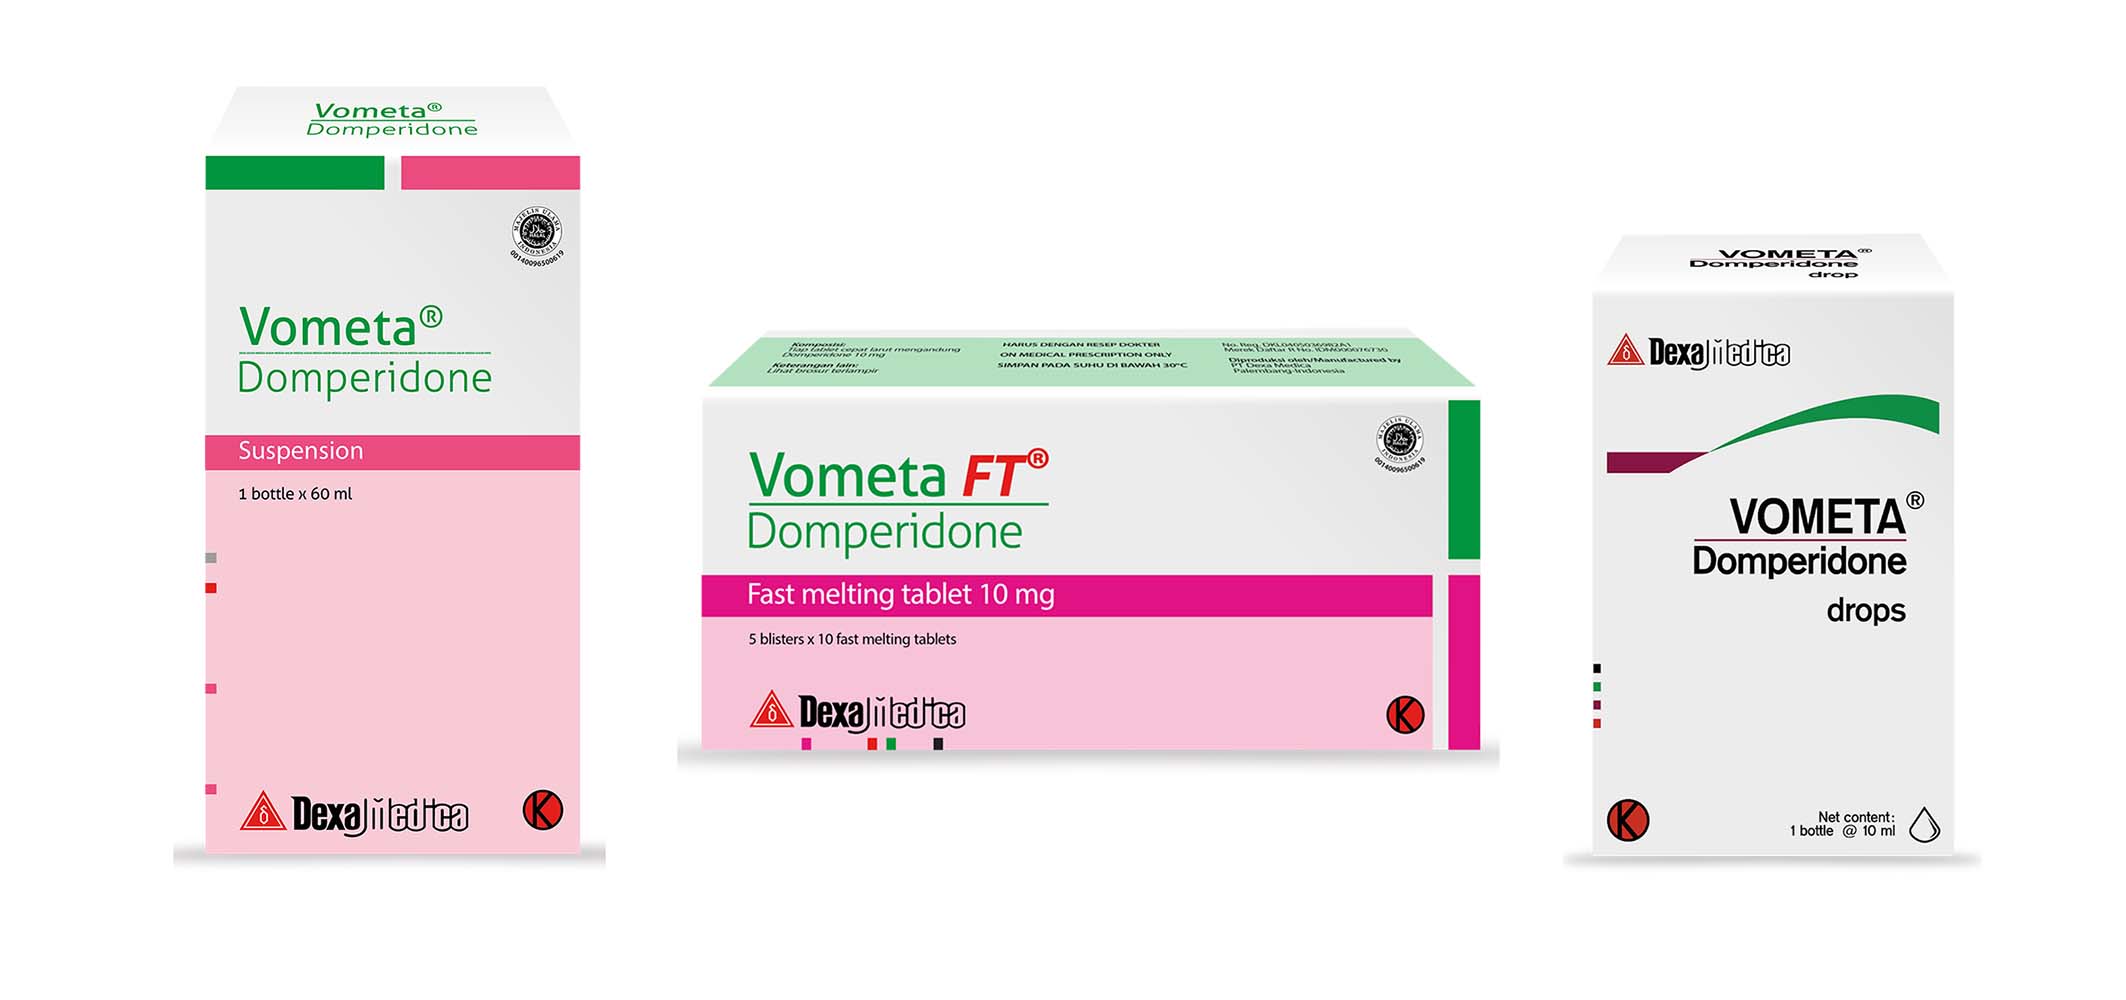 Obat anti mual dan muntah Vometa